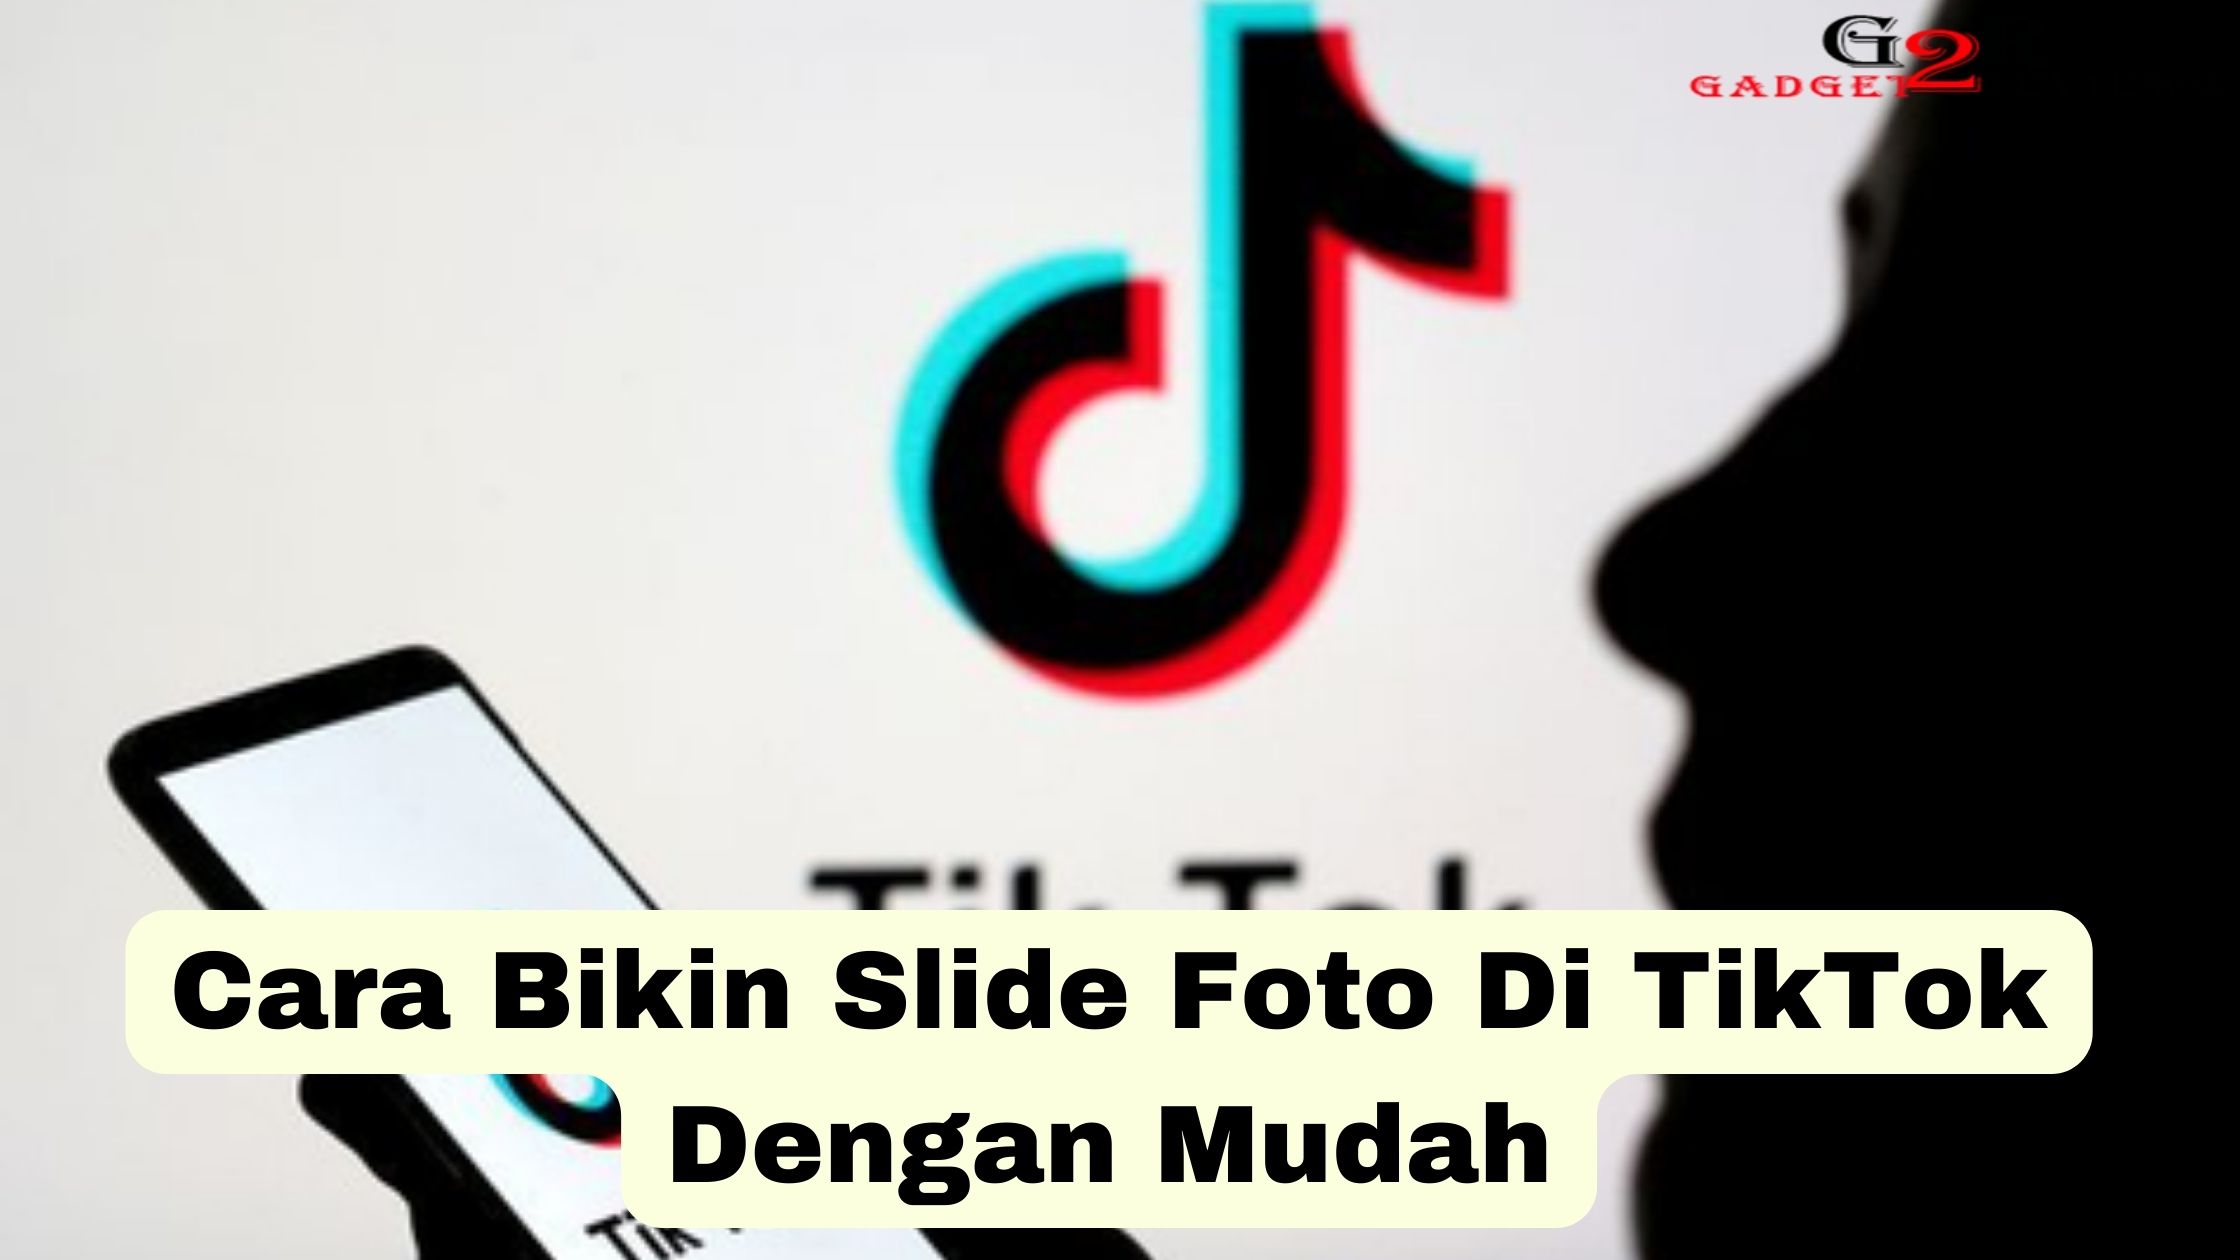 Cara Bikin Slide Foto Di TikTok